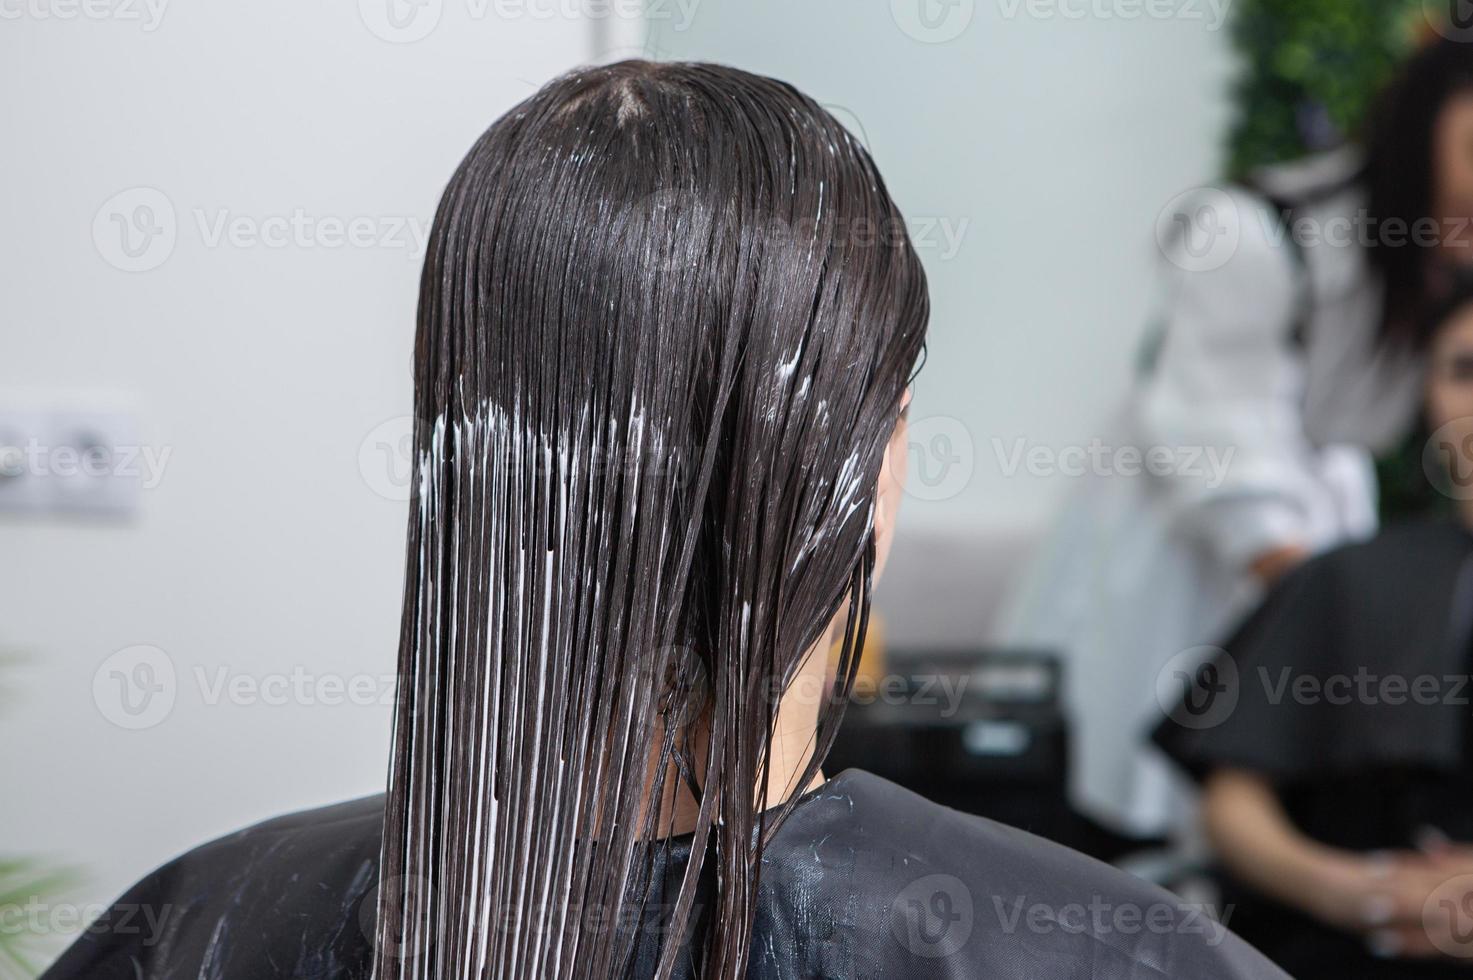 le coiffeur applique un masque capillaire sur les cheveux noirs raides. soins capillaires au salon de beauté. photo